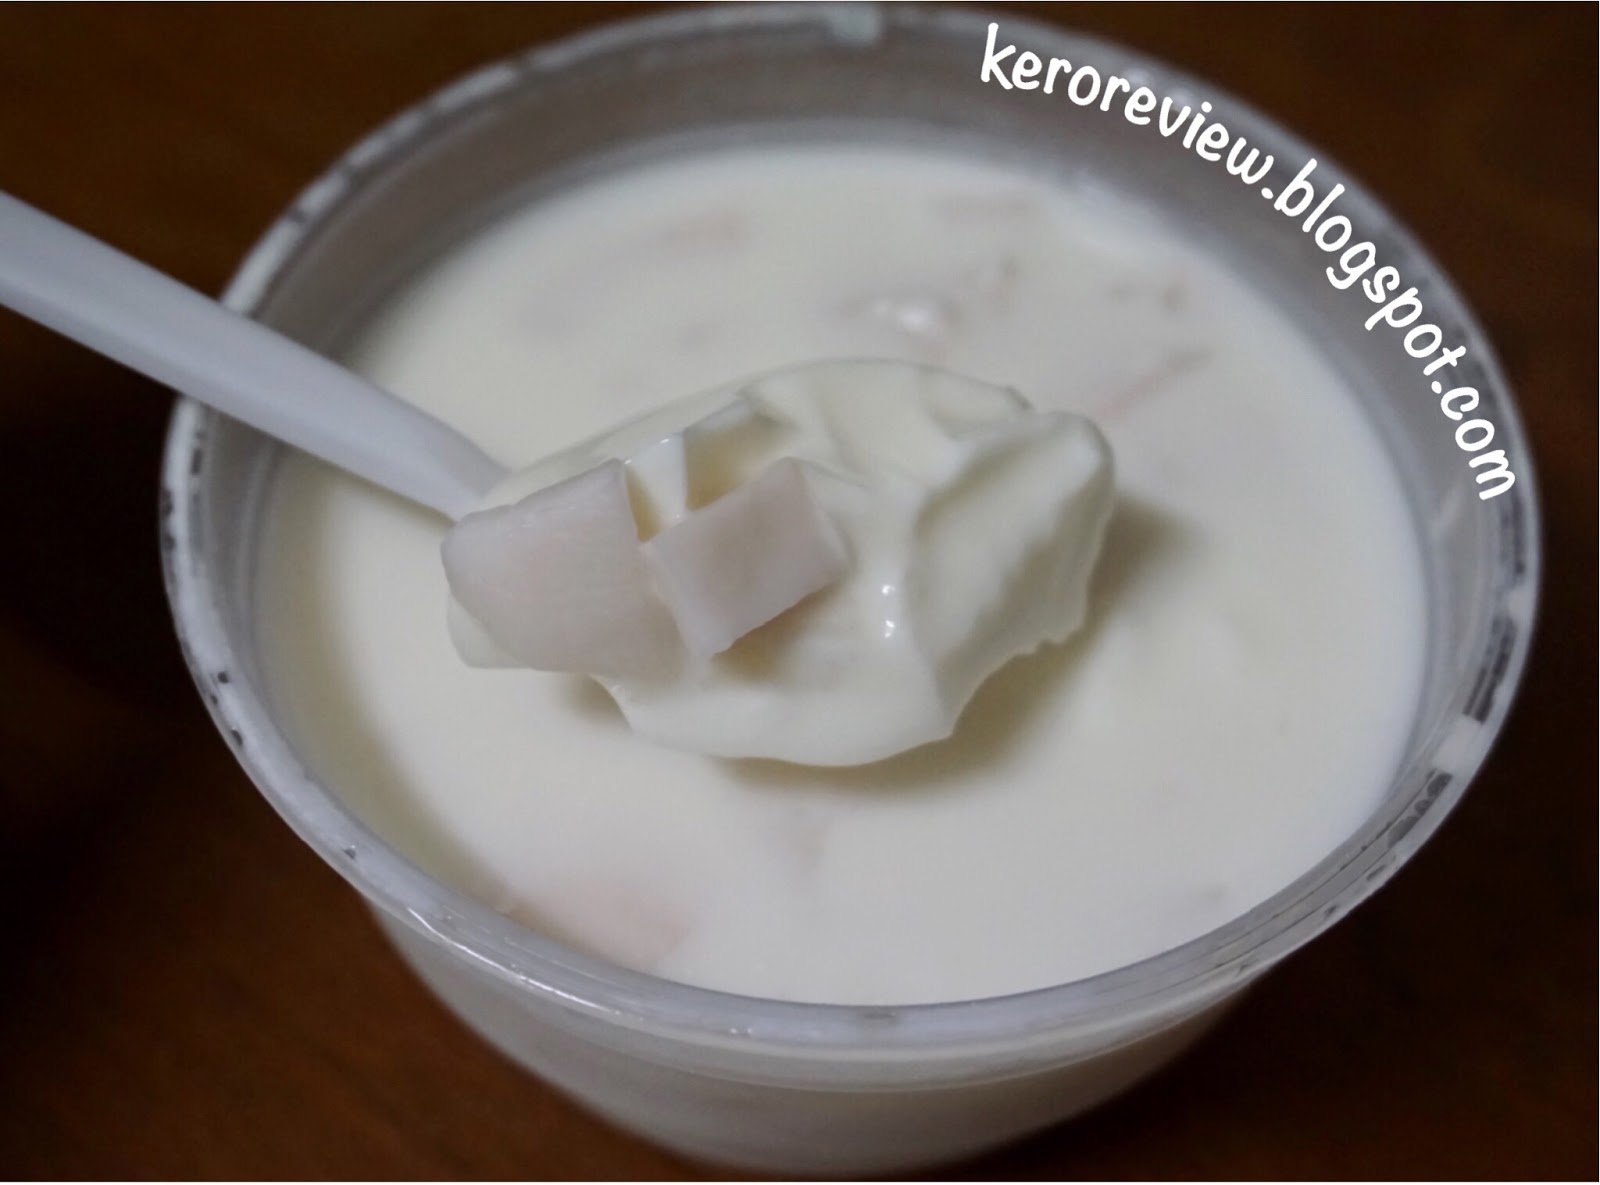 รีวิว พุดดิ้งมะพร้าวน้ำหอม - ฮาน่า โคโค่ พุดดิ้งของคนไทย (CR) Review Thai Coconut Pudding - Hana Coco Pudding.